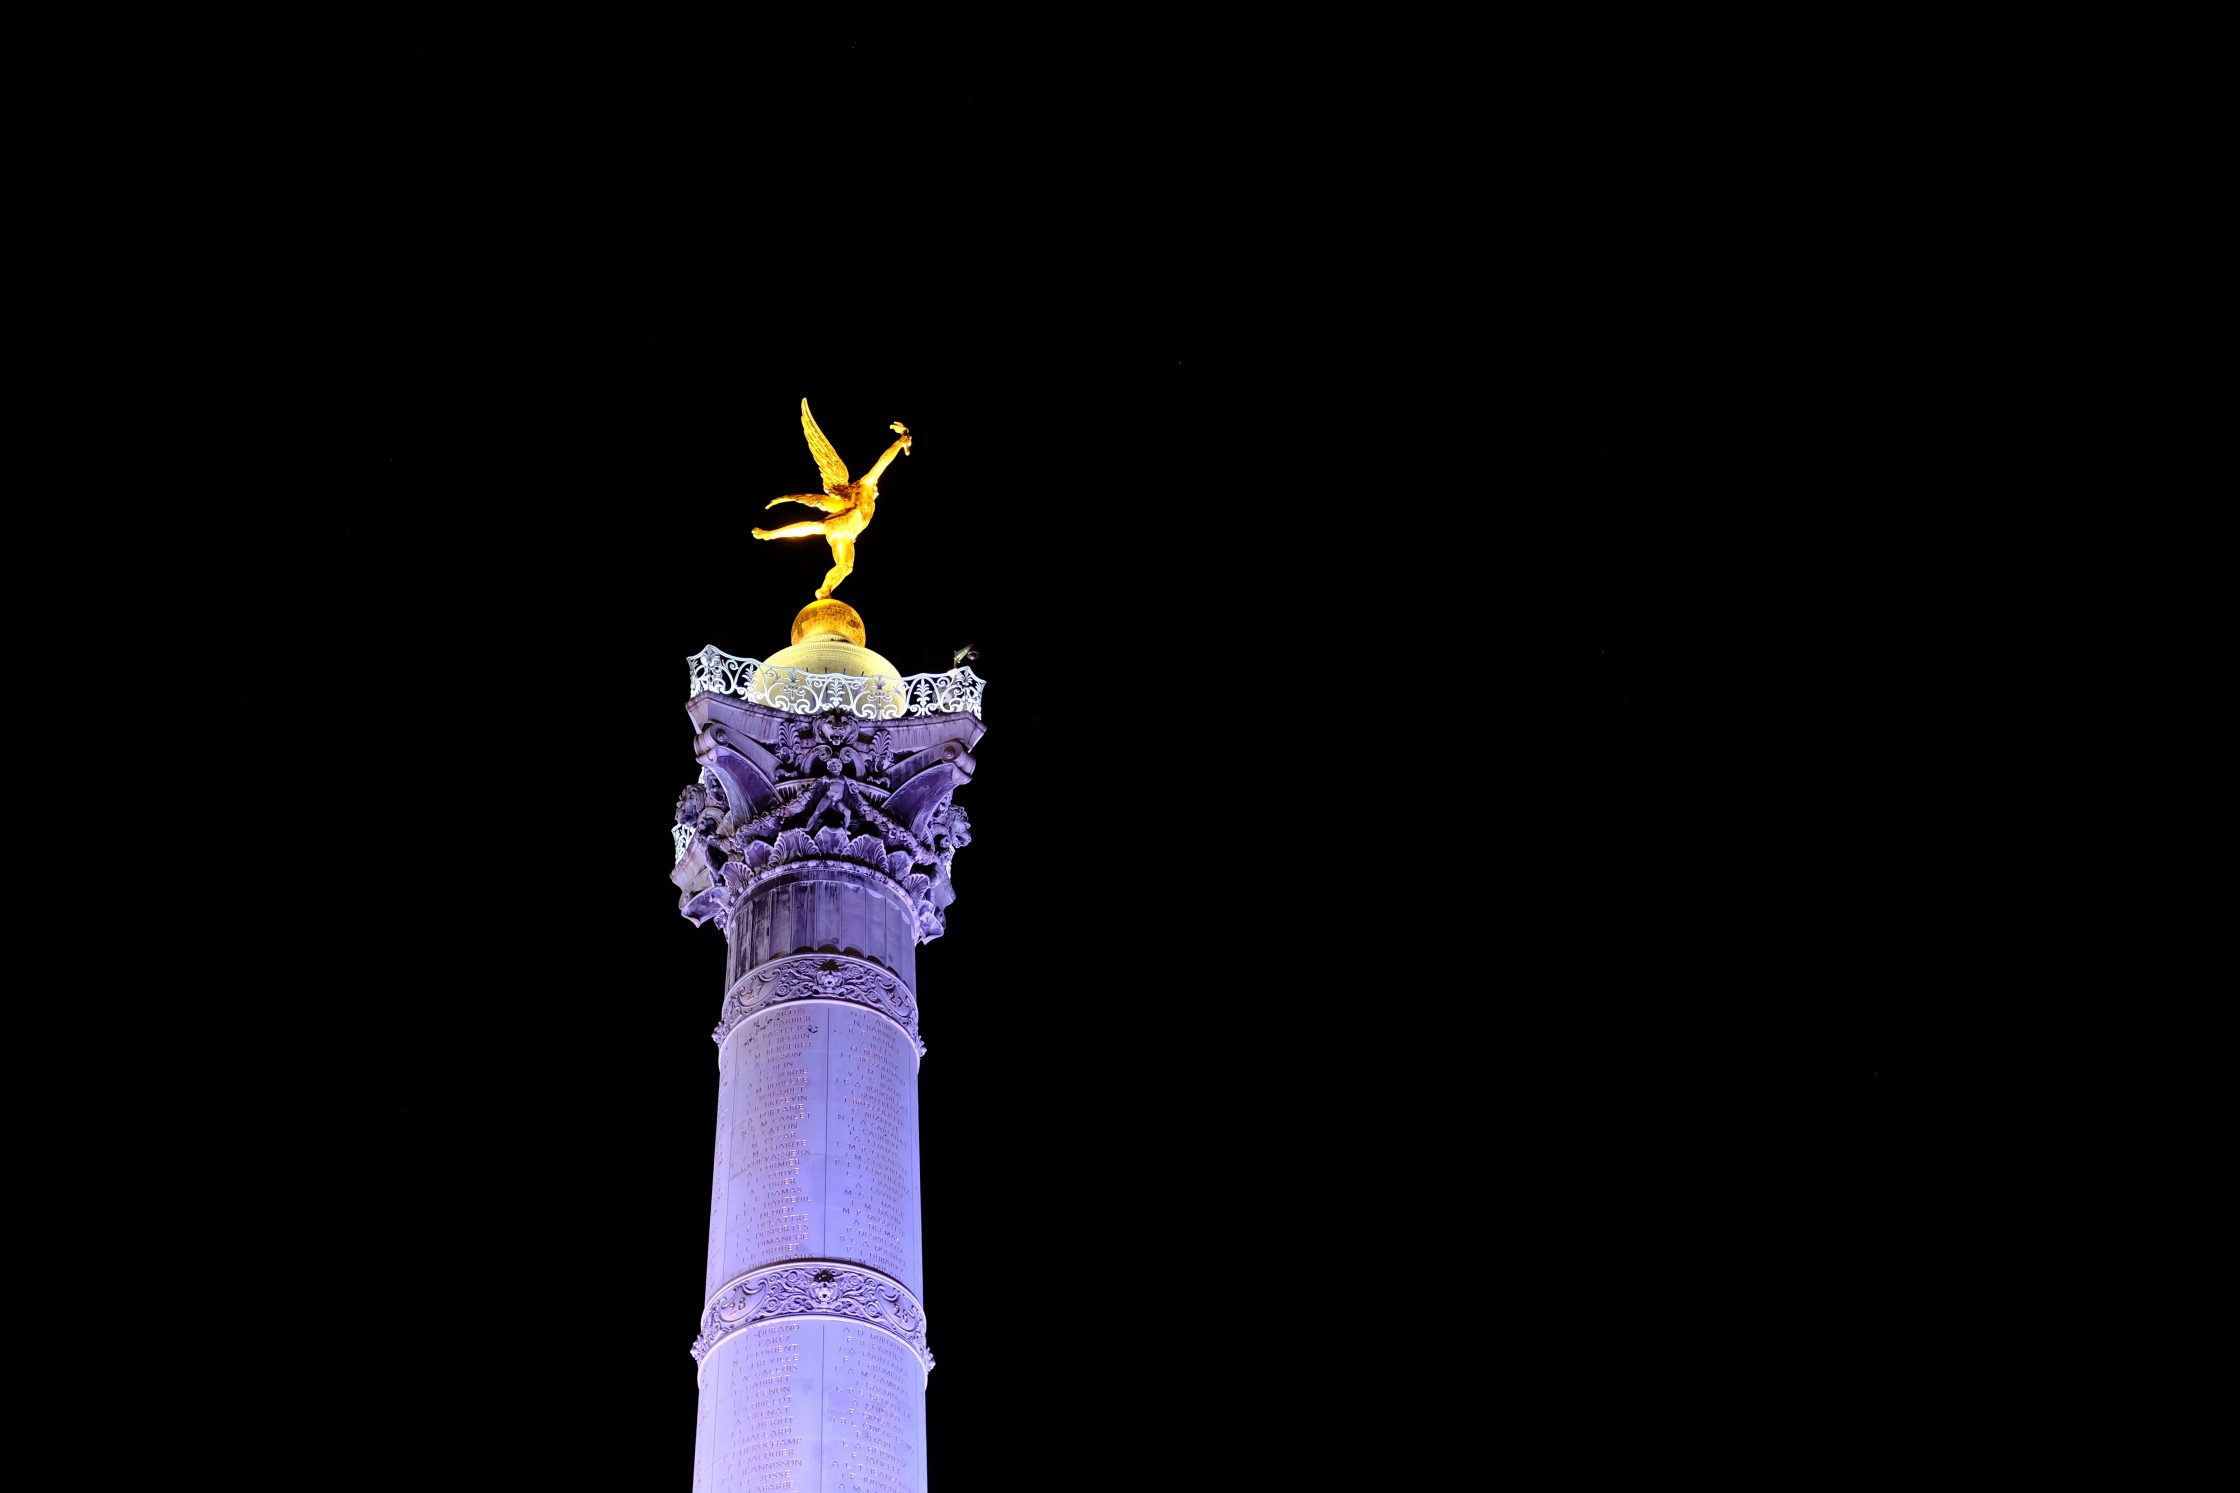 Le génie de la Liberté pendant la nuit au sommet de la colonne de Juillet